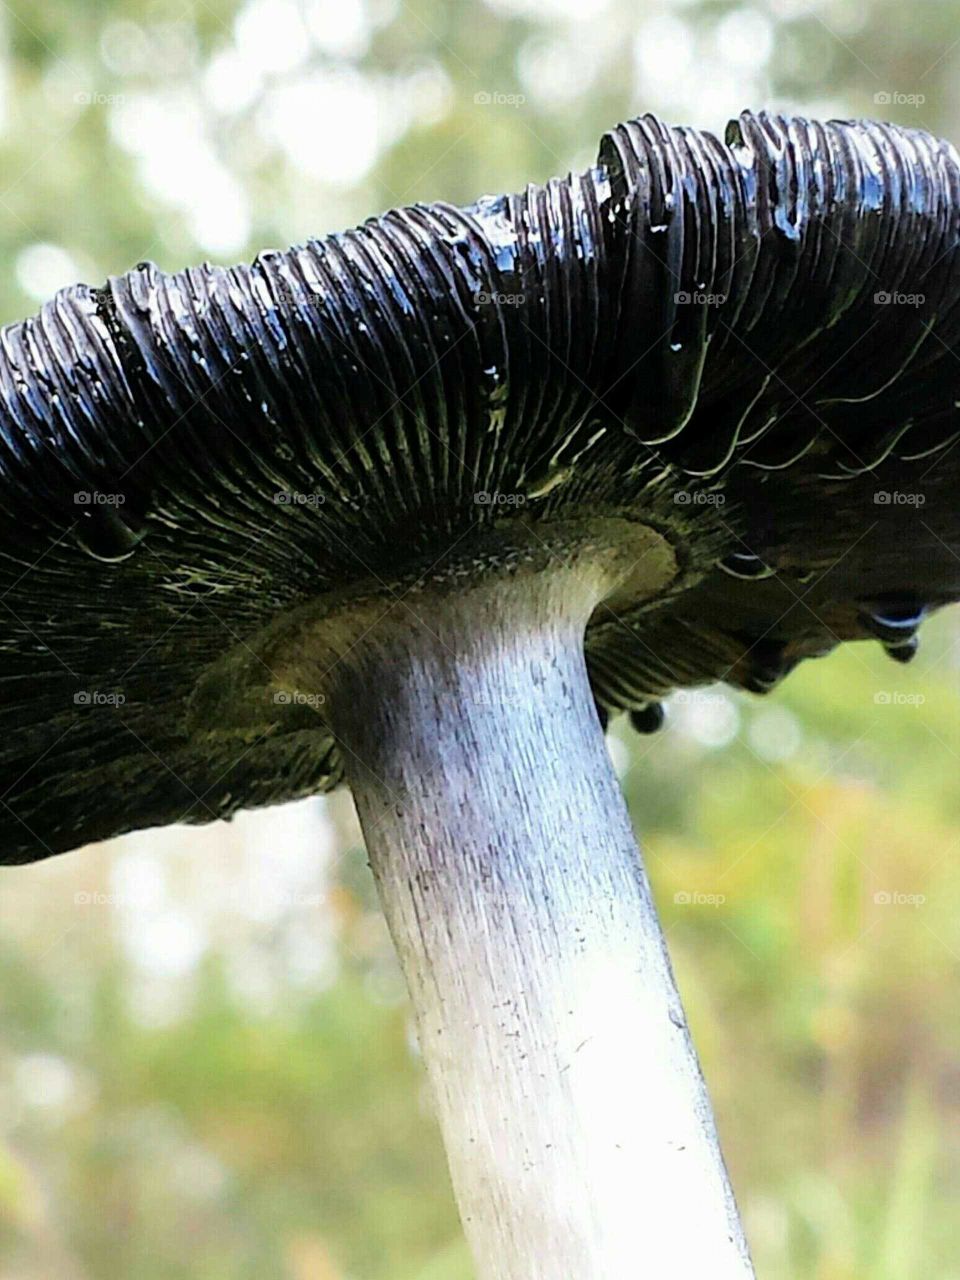 Mushroom melting